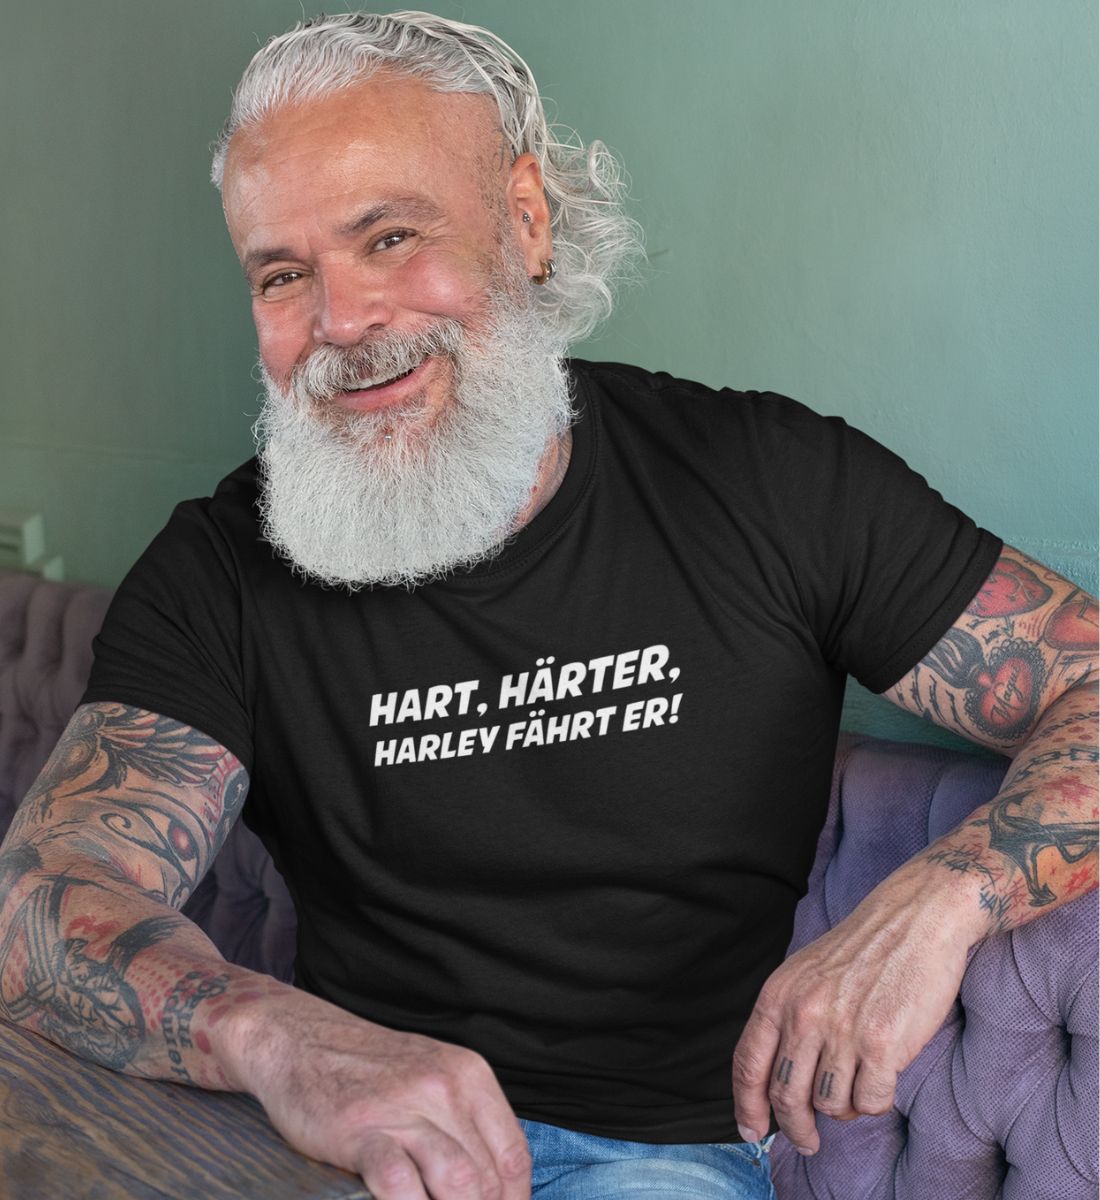 Hart,Härter,Harley fährt er - Herren T-Shirt